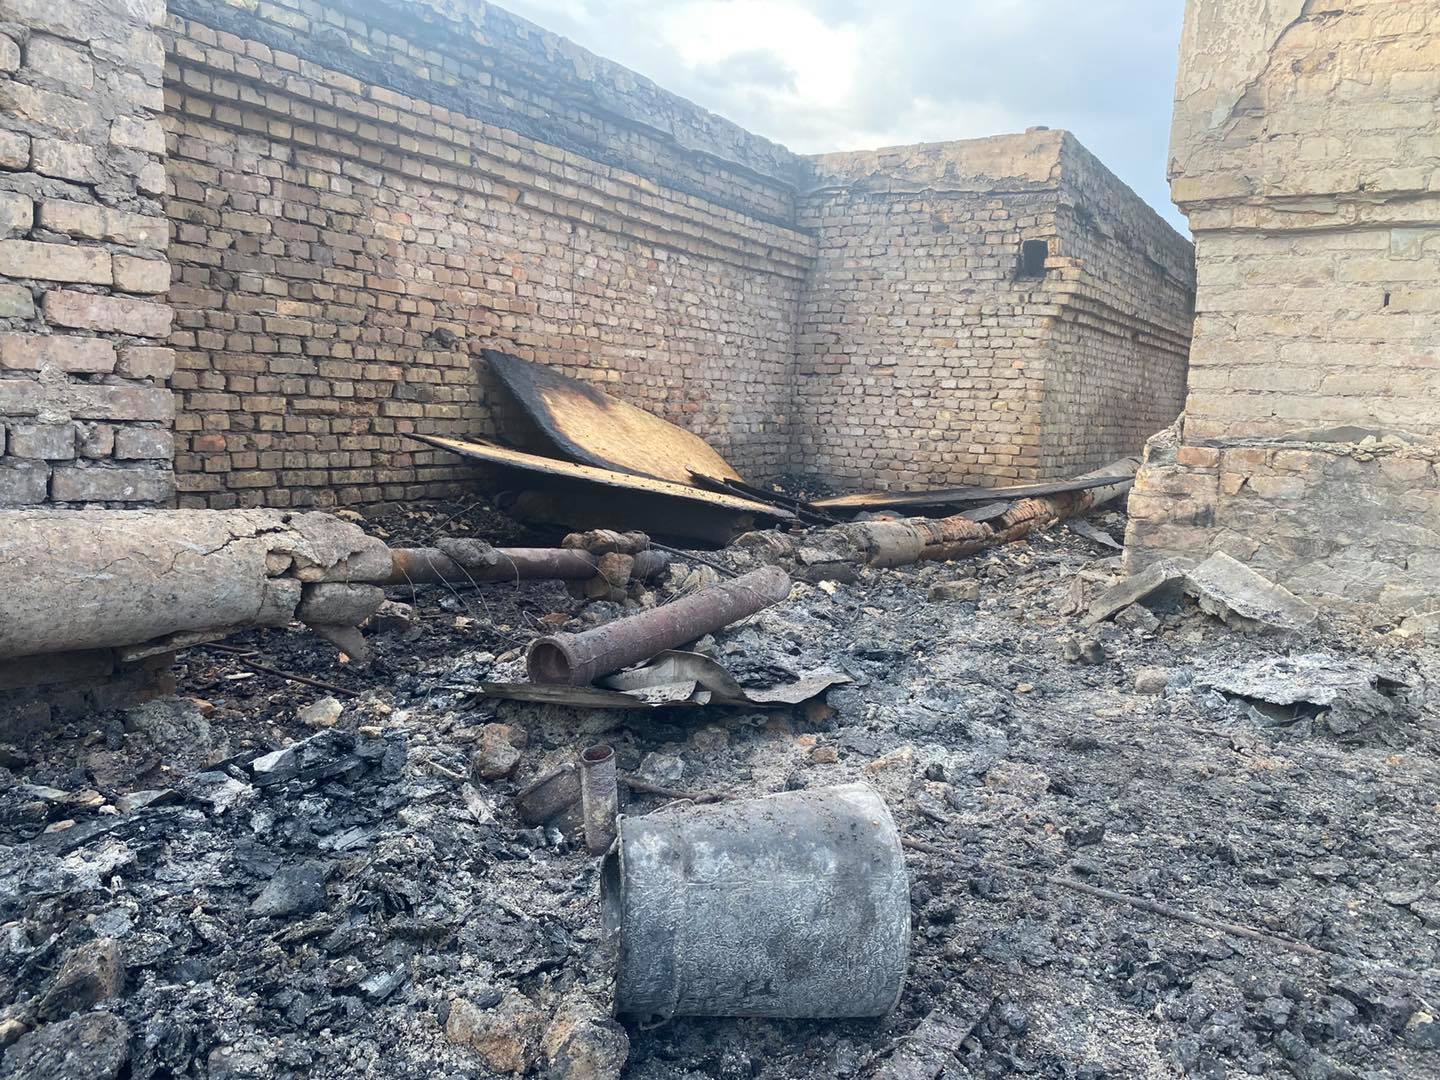 Полная разруха: в сети показали, что сейчас происходит на месте пожара в многоэтажке в центре Запорожья (ФОТО)